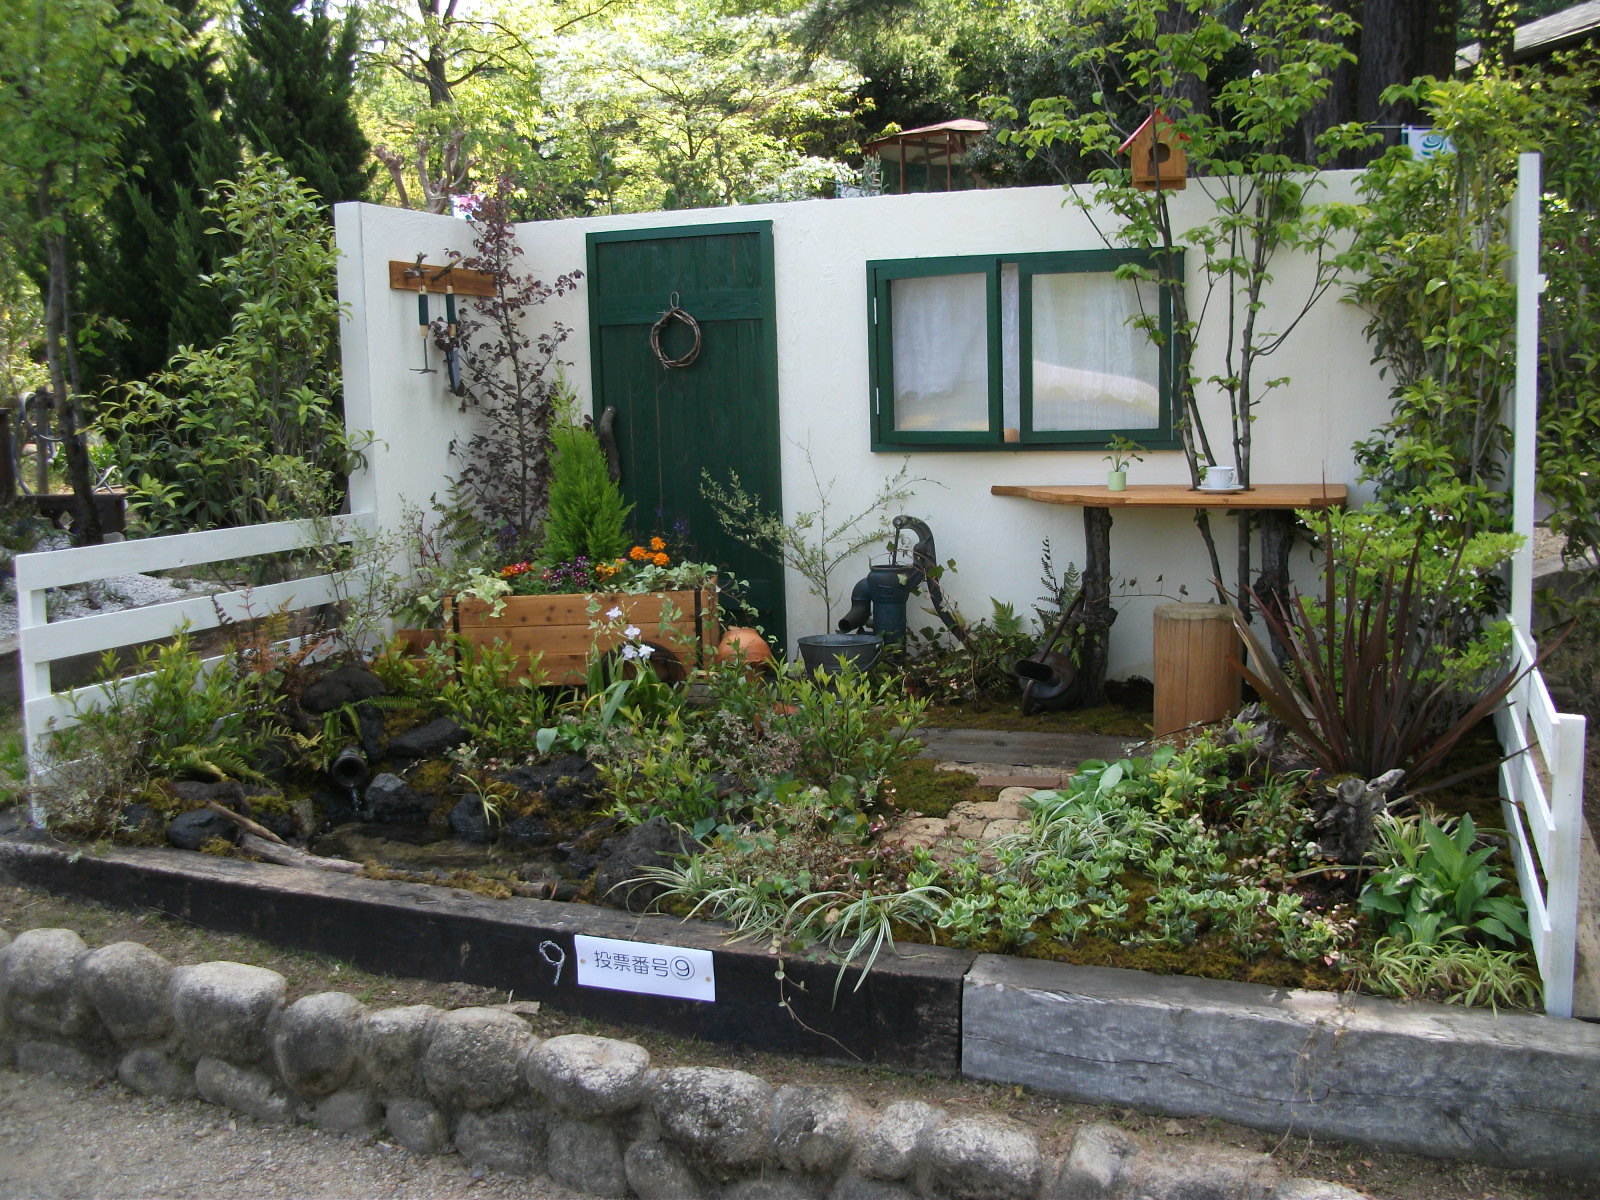 ㈱奈須造園の「窓辺の小さな「ヒミツ」の小庭」